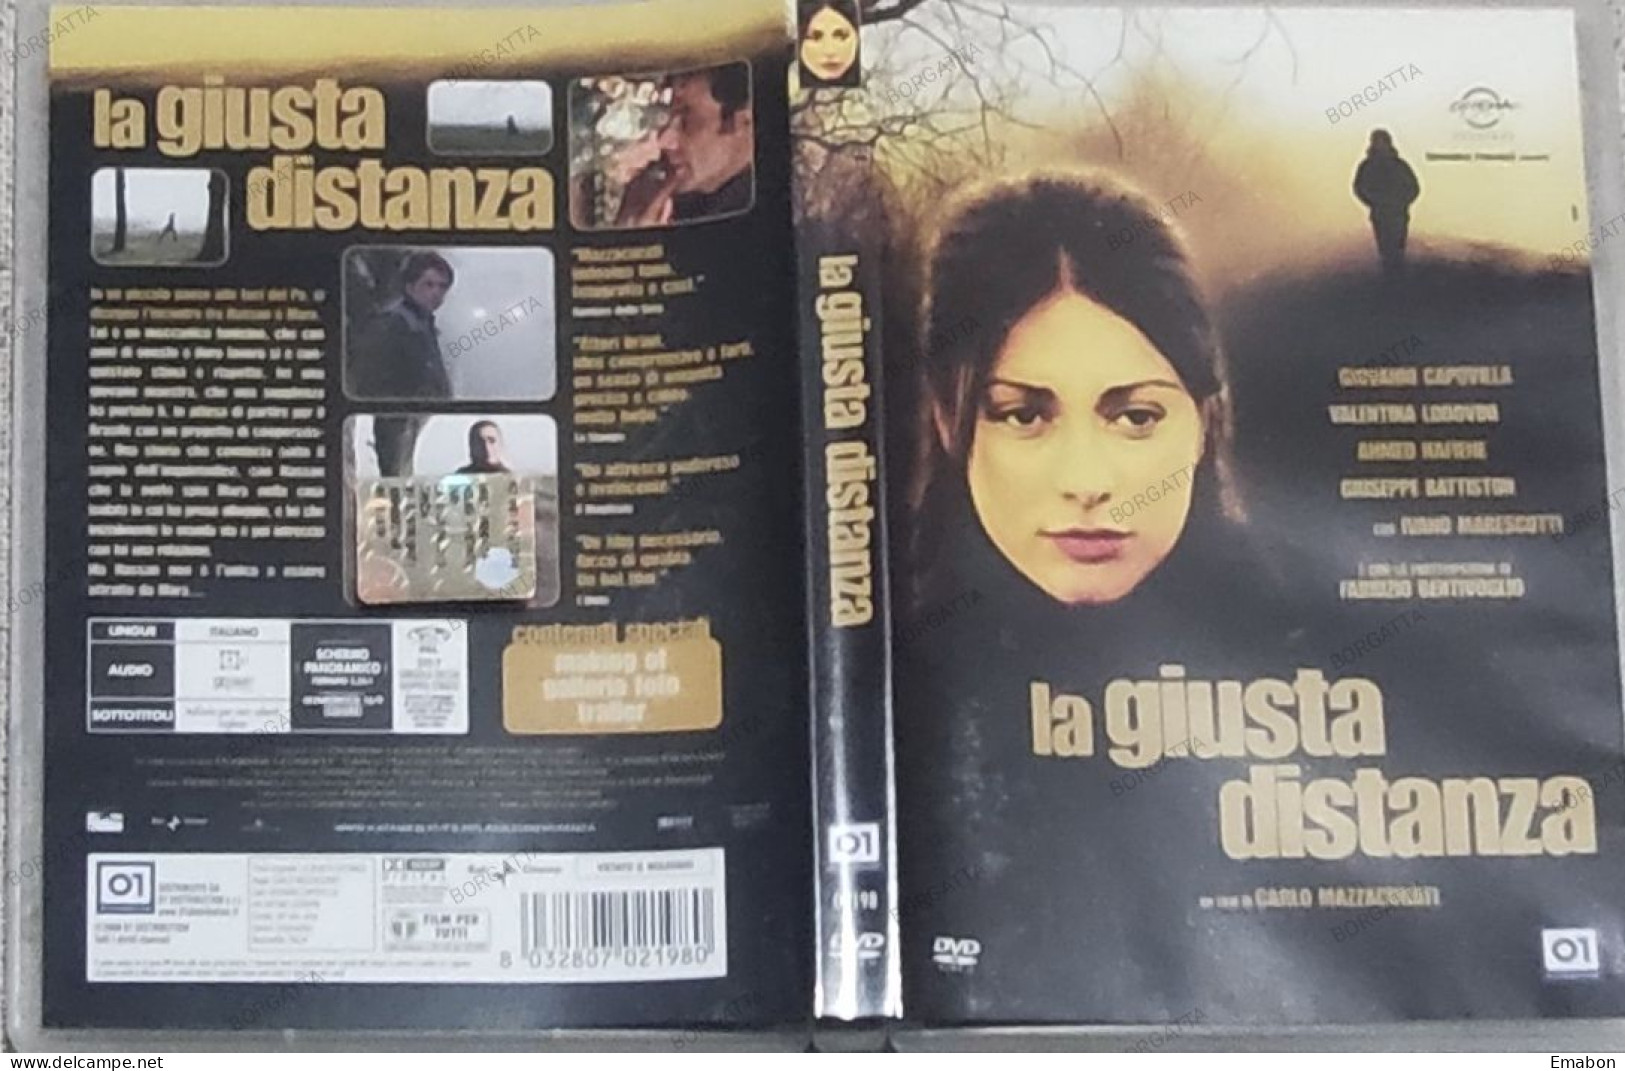 BORGATTA - DRAMMA - Dvd  " LA GIUSTA DISTANZA " CARLO MAZZACURATI - PAL 2 - 01DISTRIBUTION 2008 -  USATO In Buono Stato - Drame